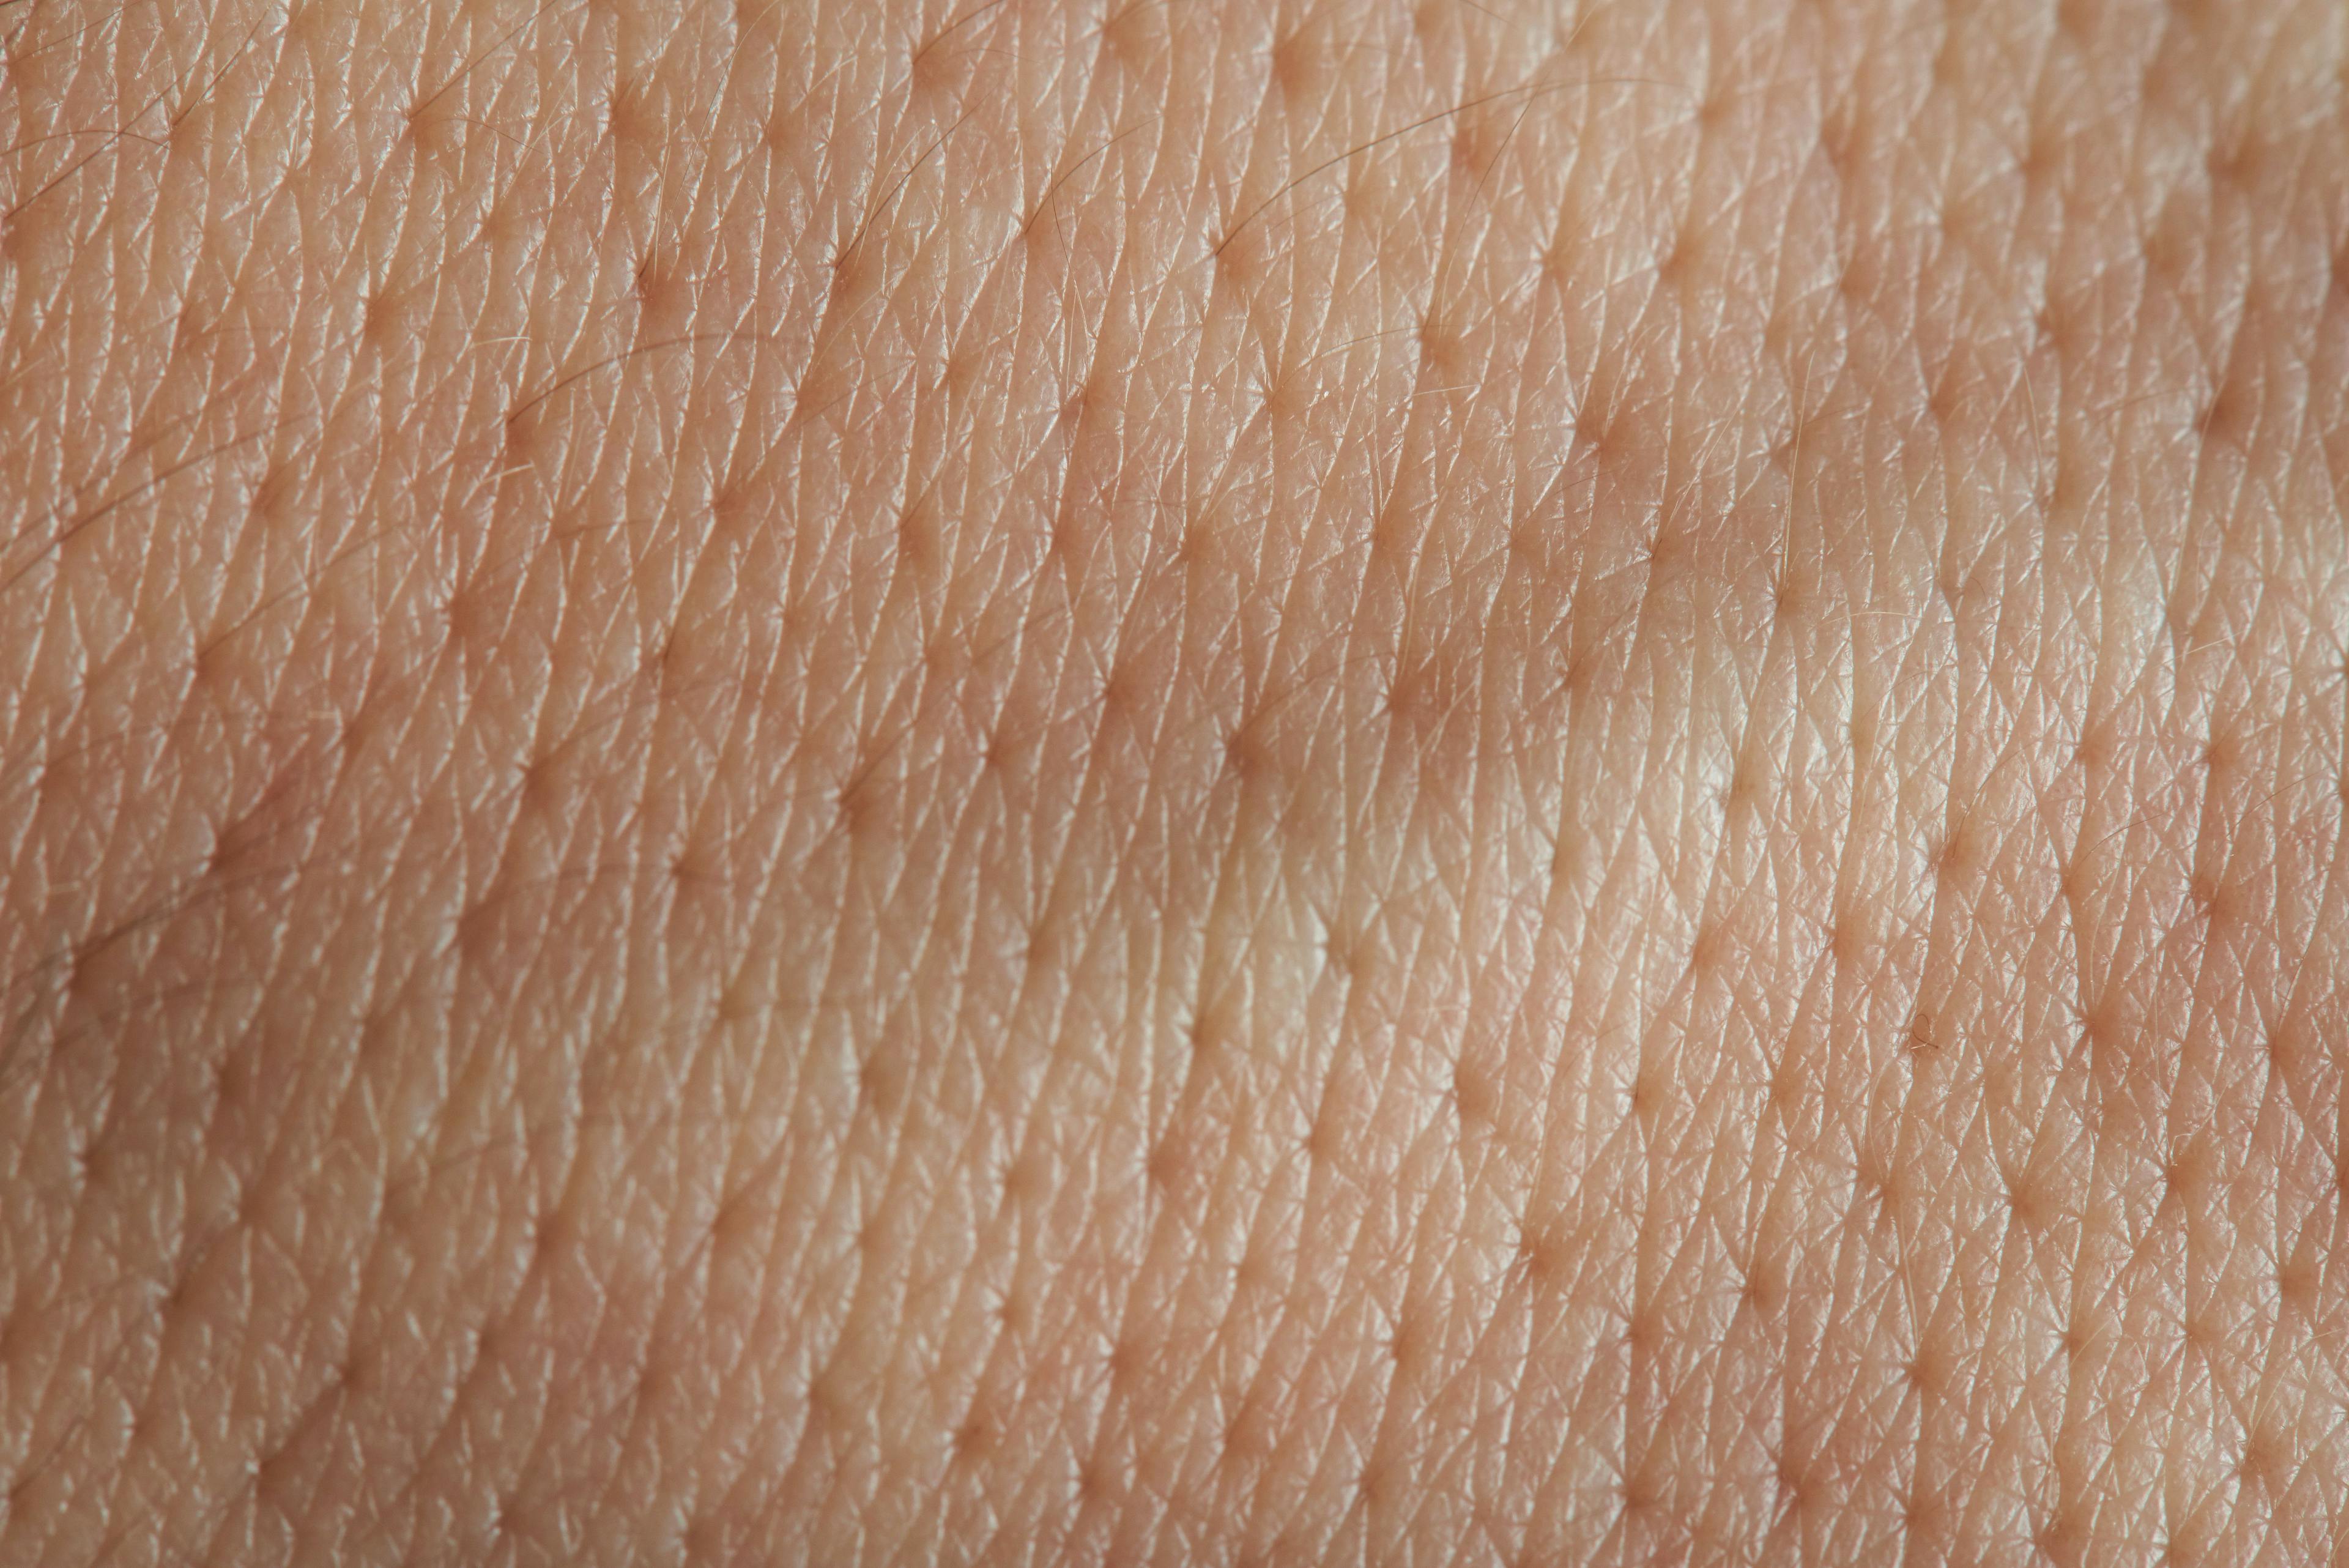 skin pores